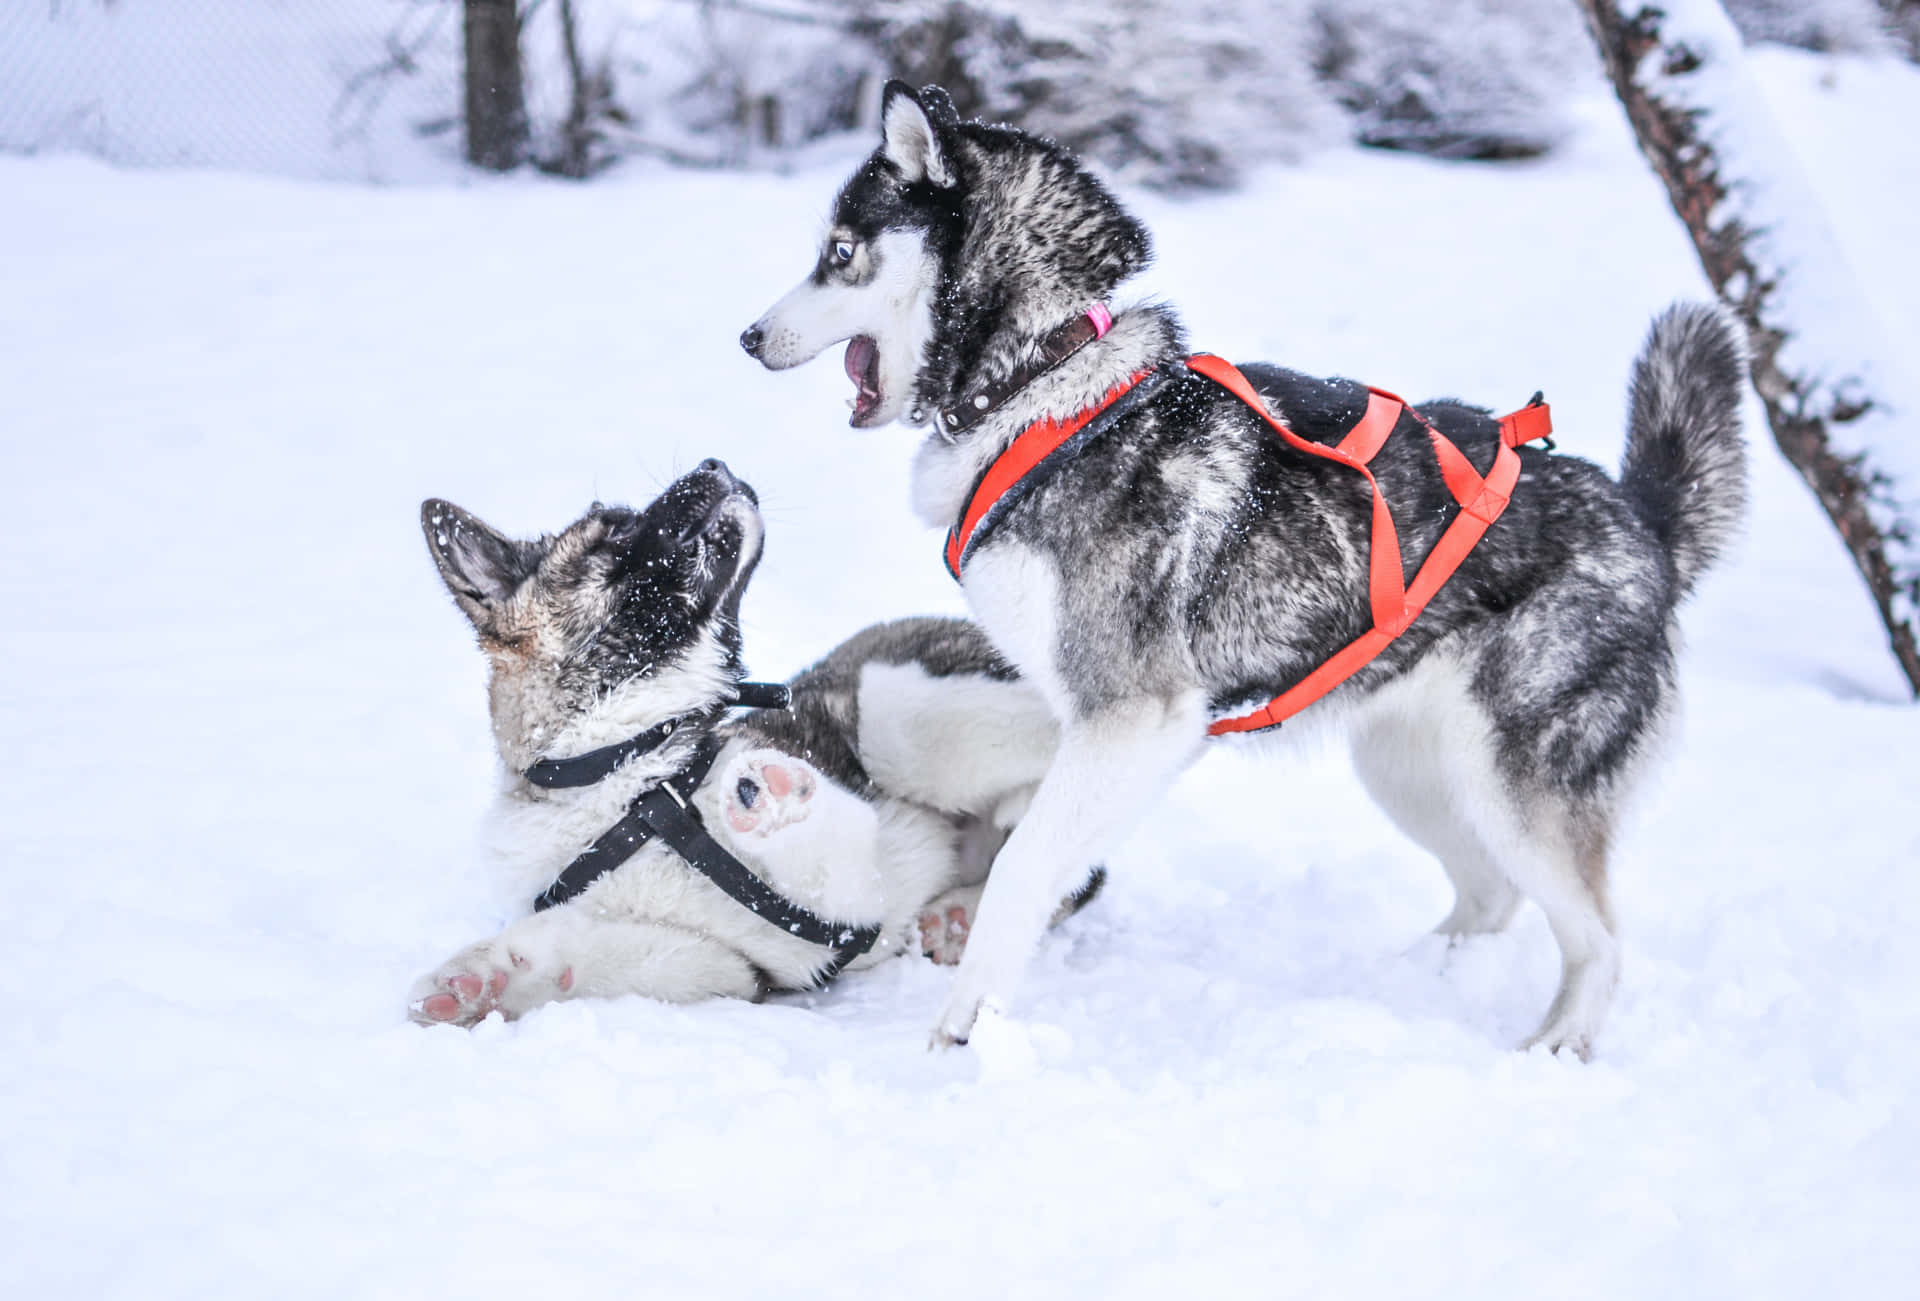 Imagende Un Perro Husky Siberiano Jugando En La Nieve.